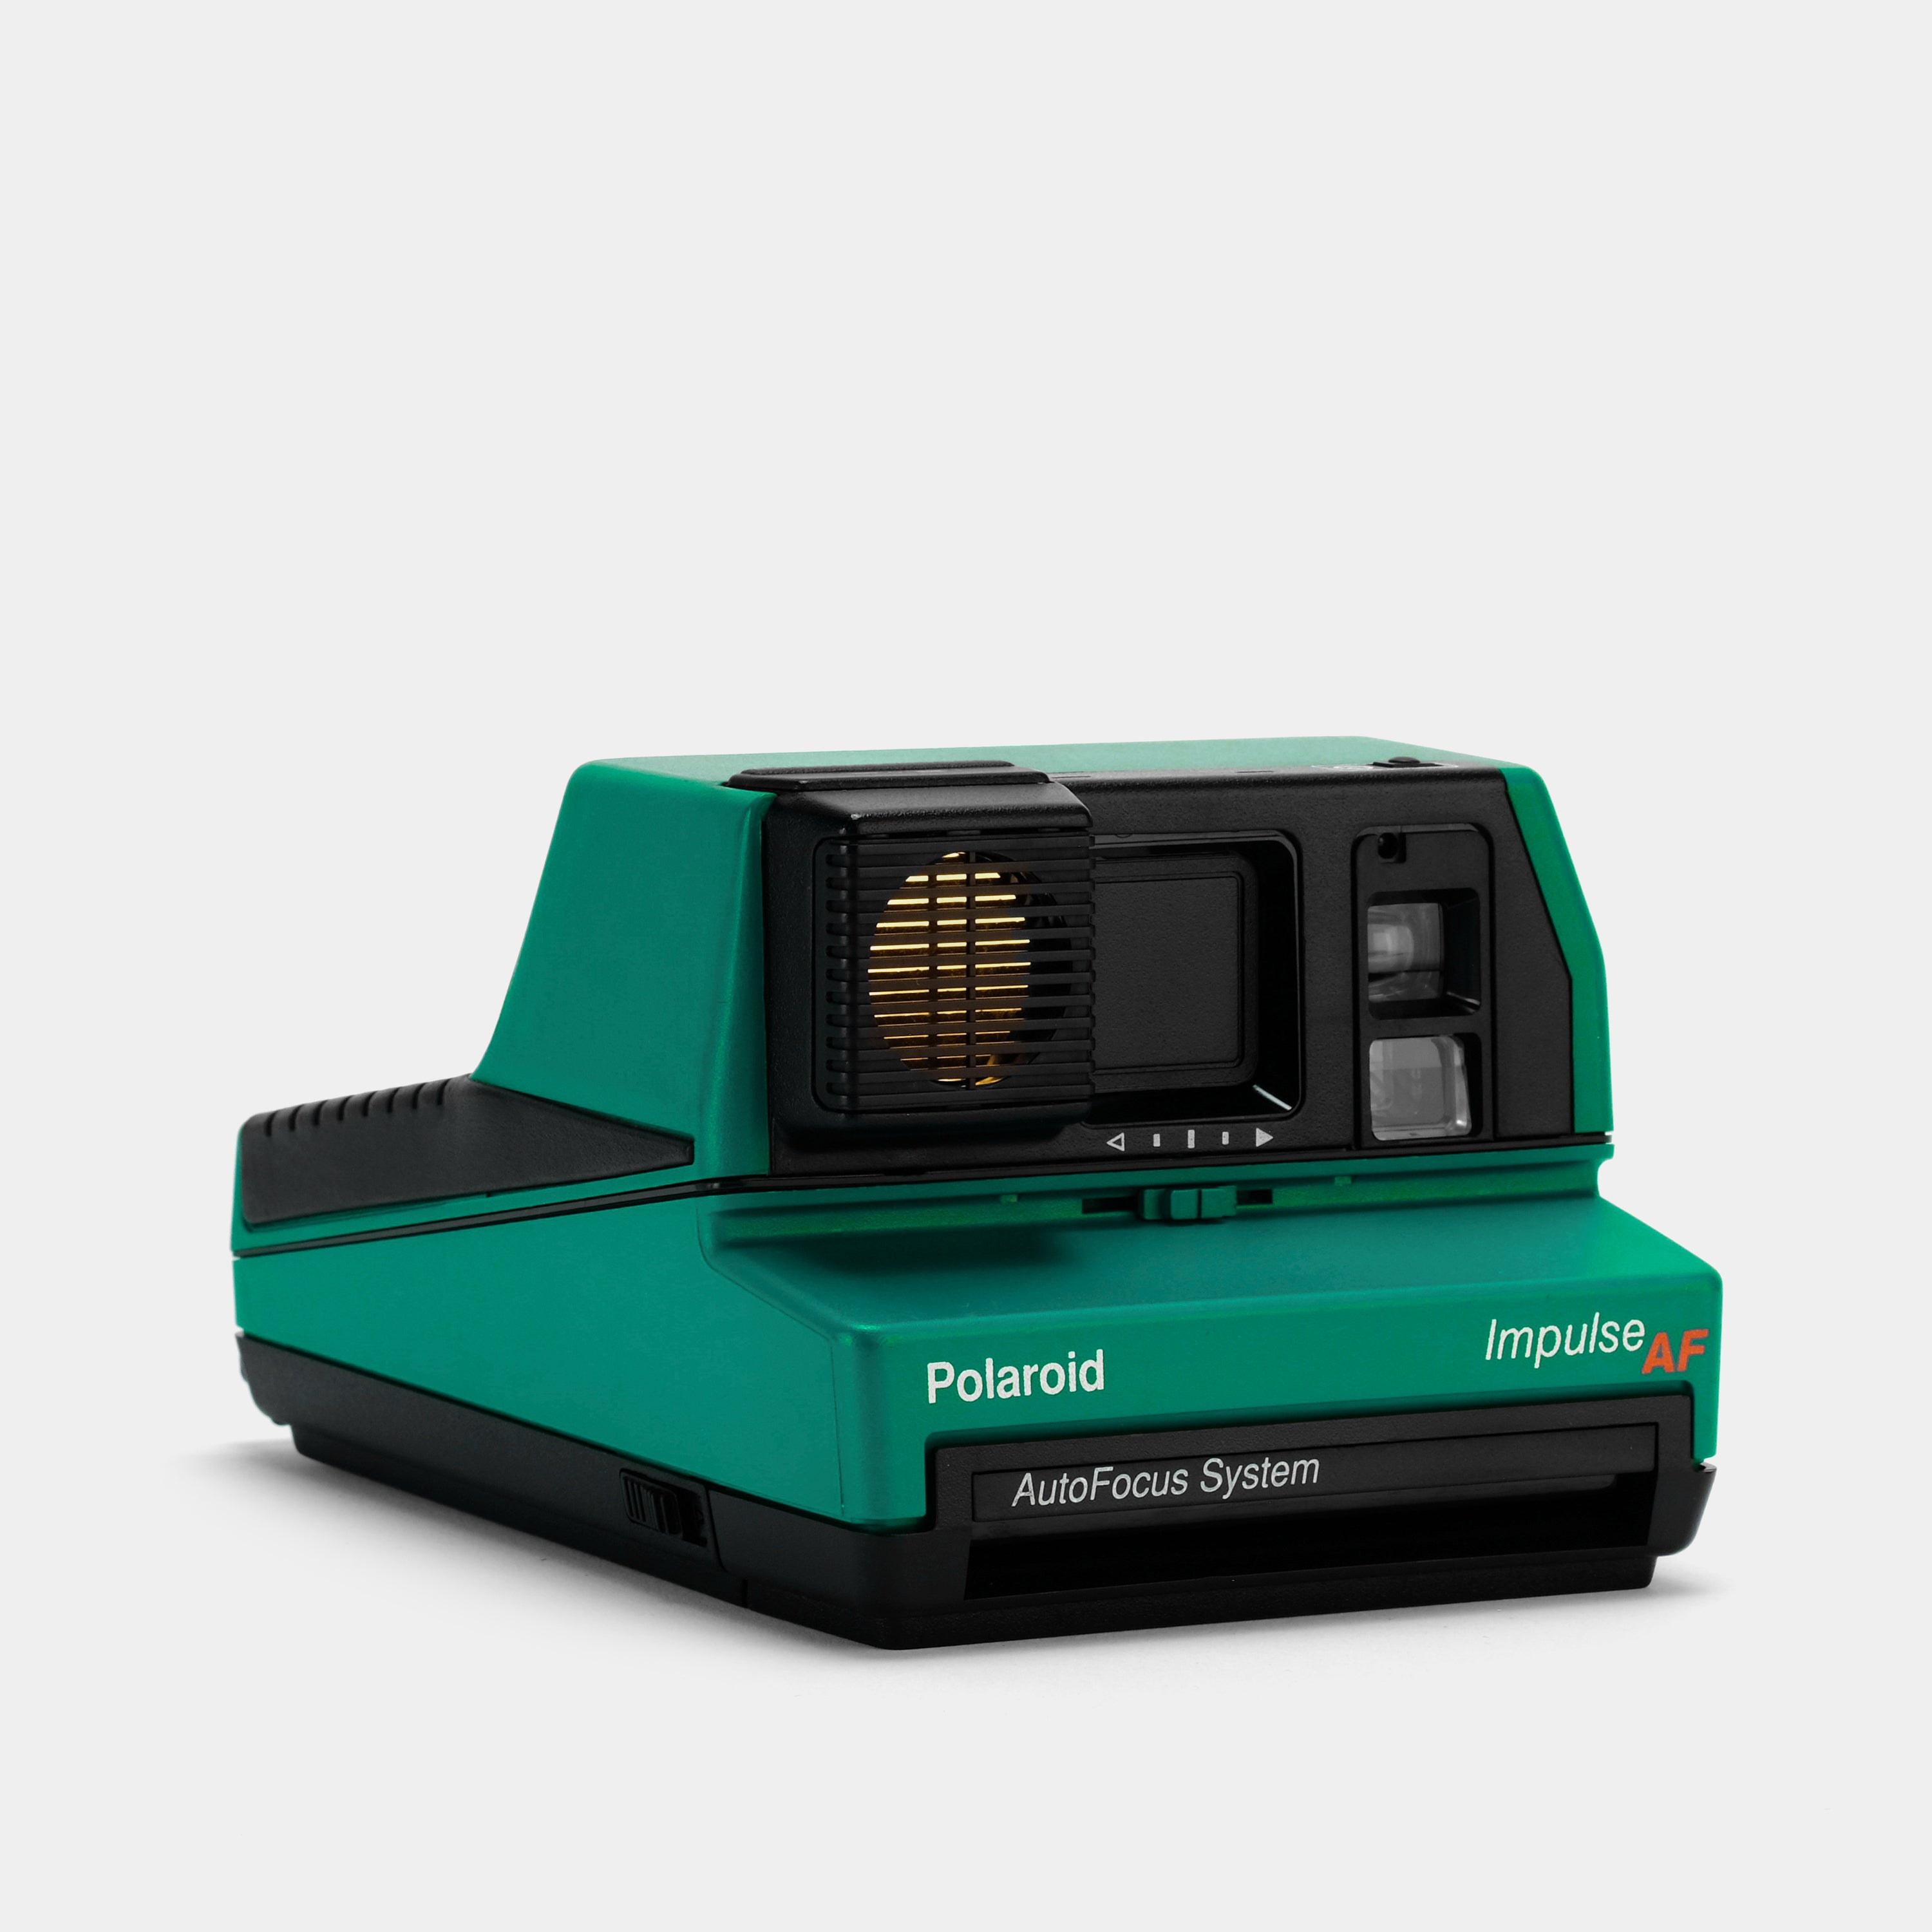 Polaroid 600 Impulse AutoFocus Jade Green Instant Film Camera